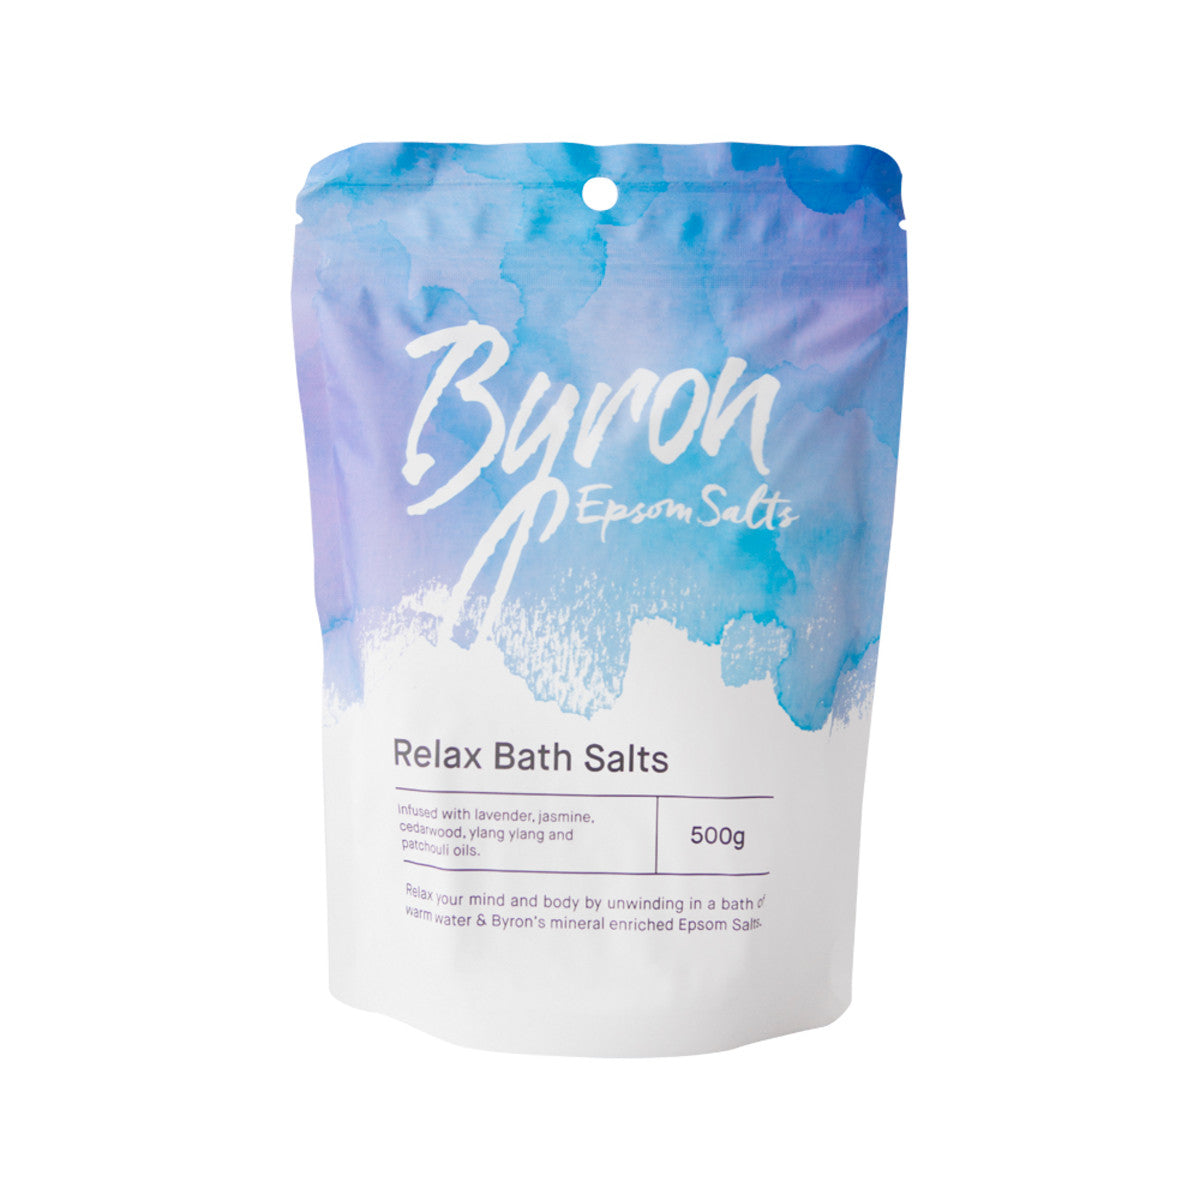 Byron - Epsom Salts Relax Bath Salts